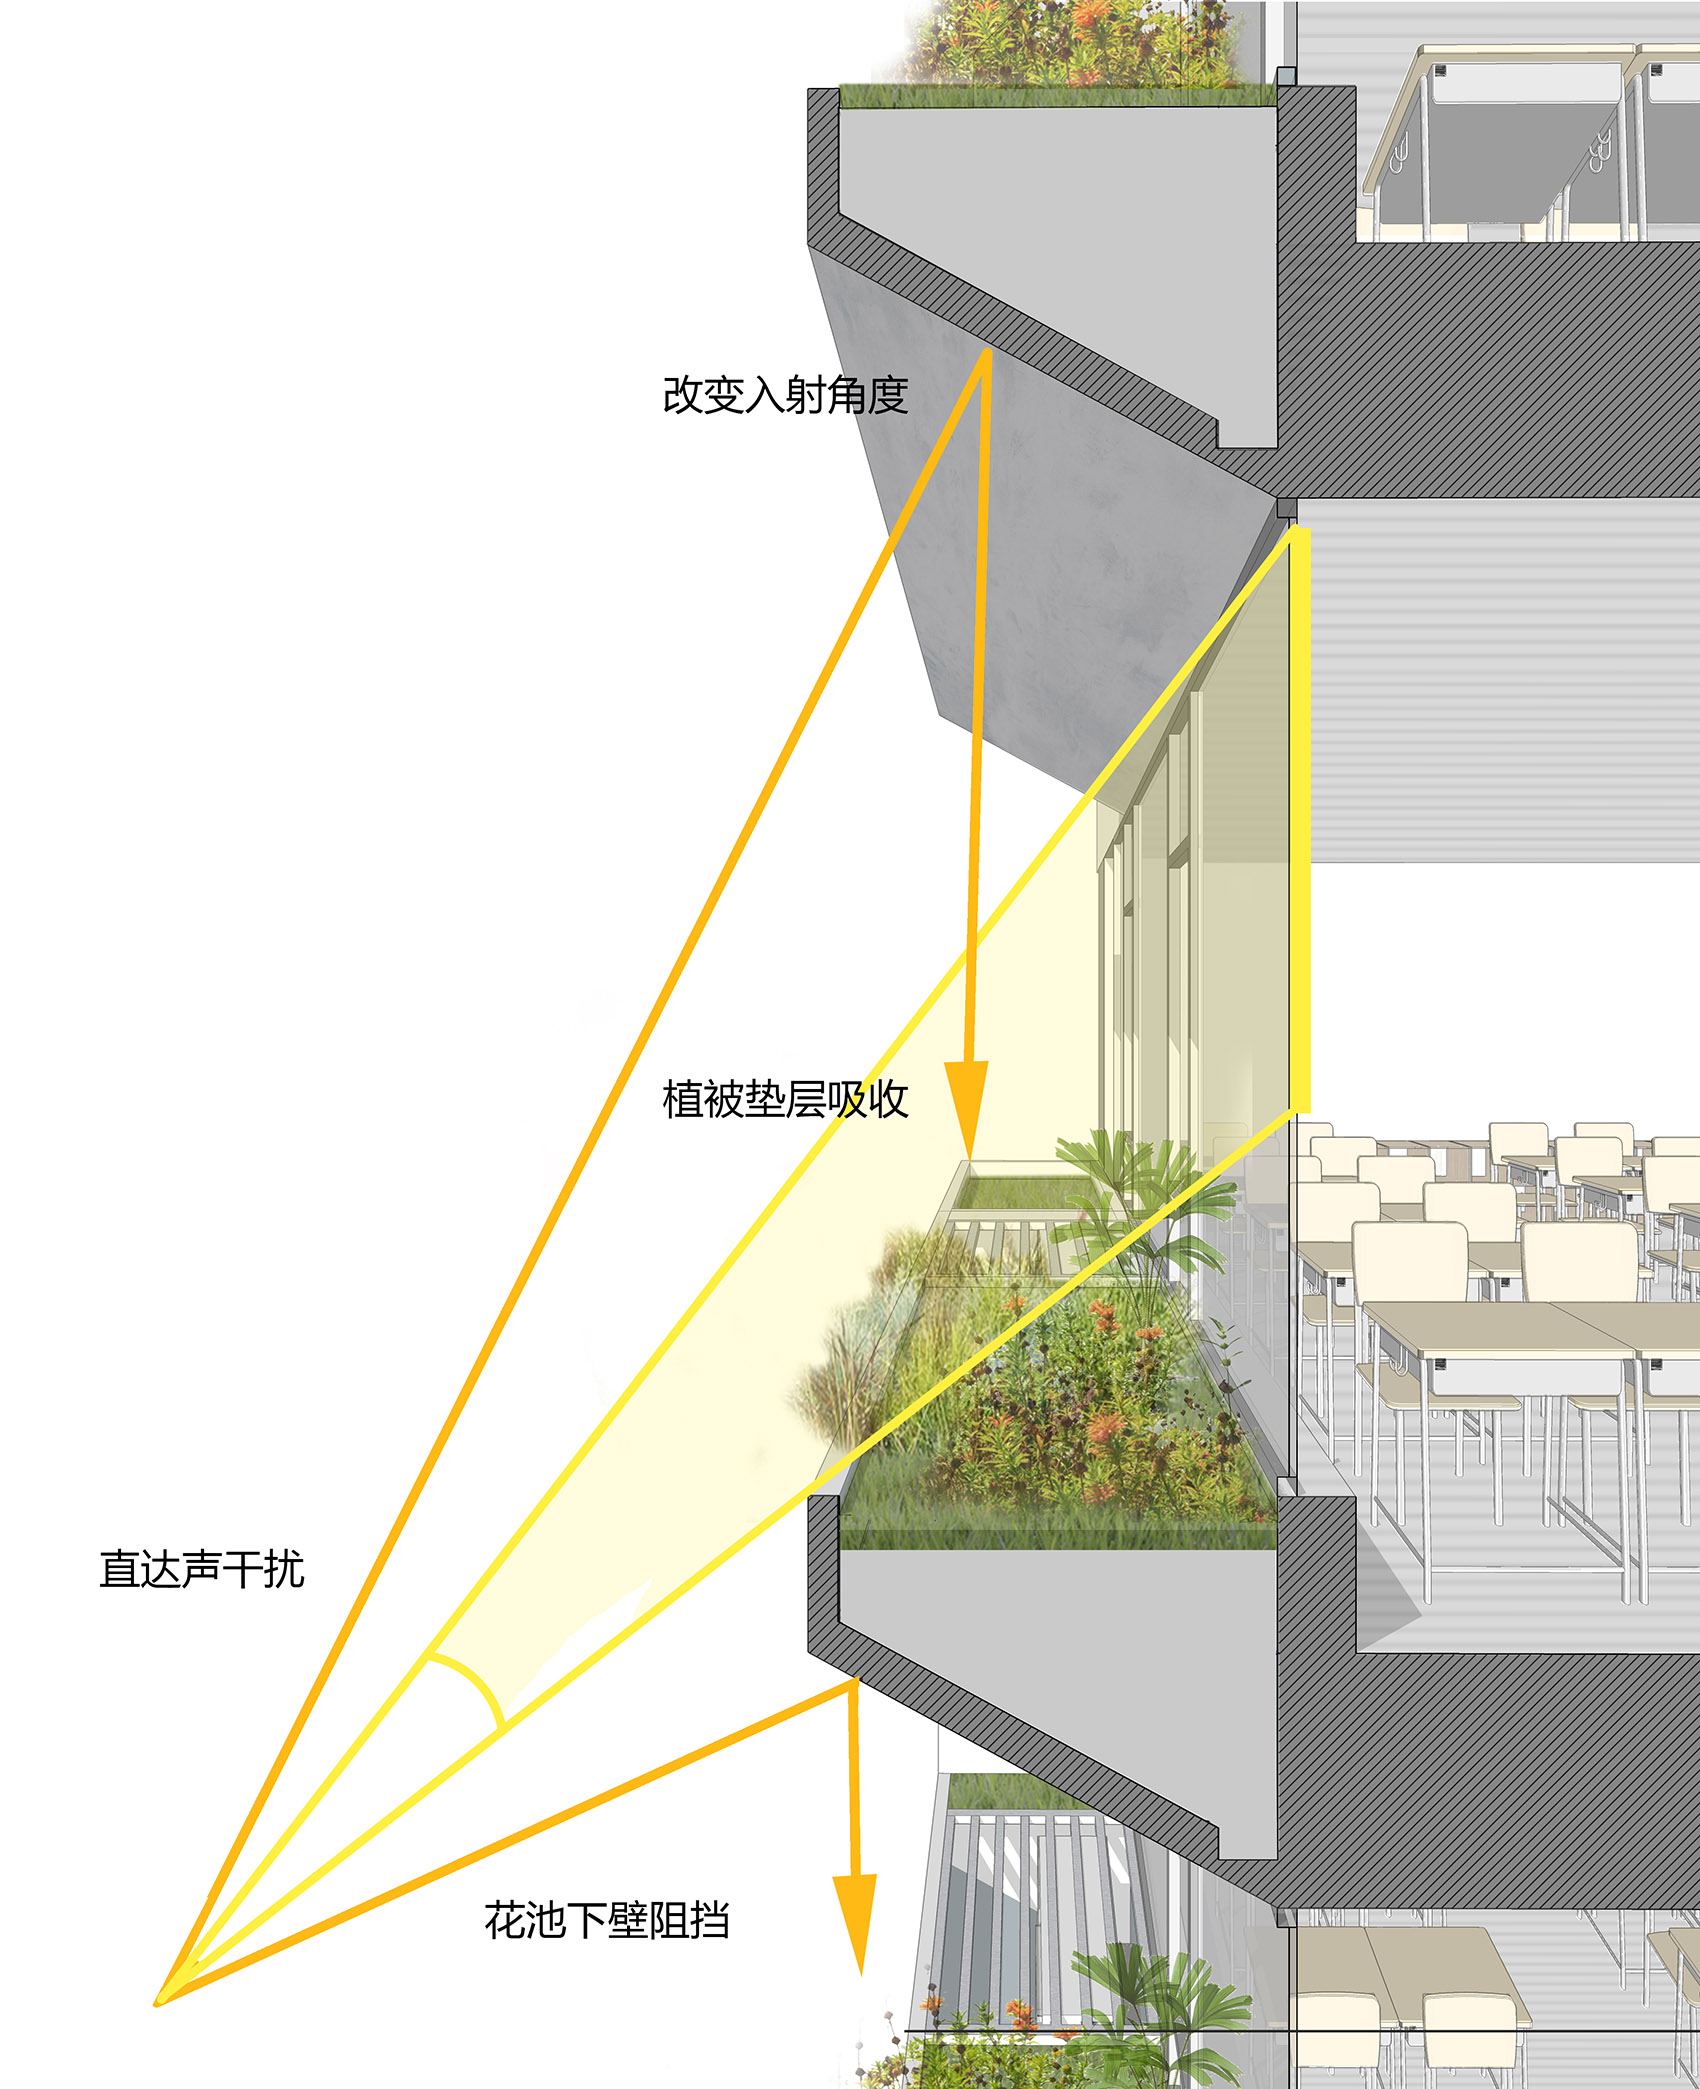 曡园 &  深圳市福田区新洲小学/探索在高密度城市建成区内的高容量学校新模式-149